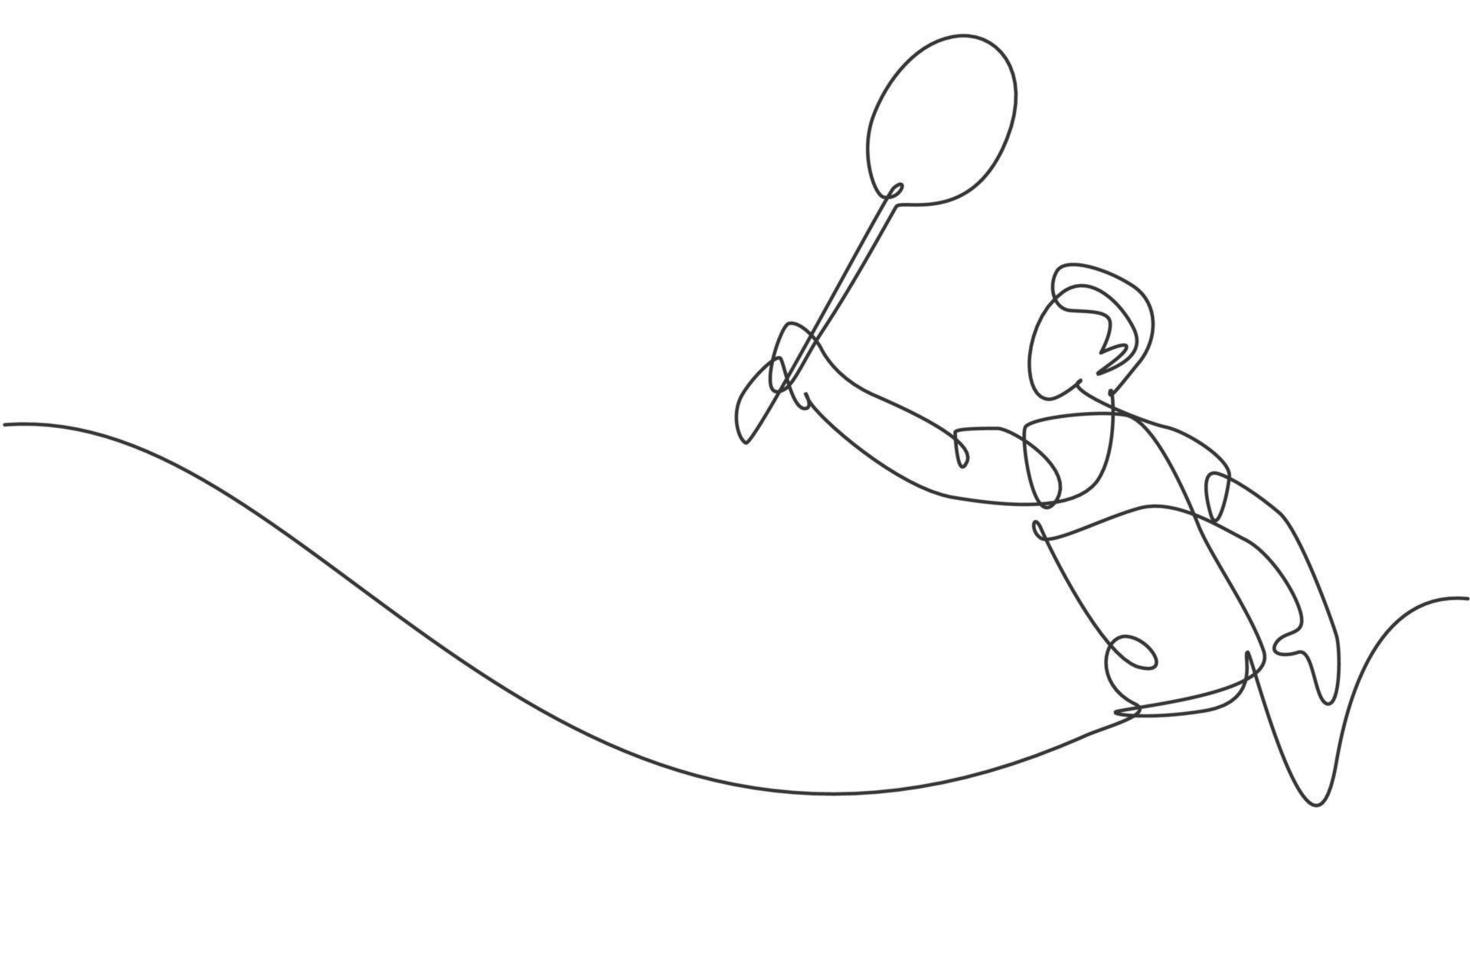 único desenho de linha contínua do jovem jogador de badminton ágil atingiu a peteca. conceito de esporte competitivo. ilustração vetorial de design de desenho de uma linha na moda para mídia de publicação de torneio de badminton vetor